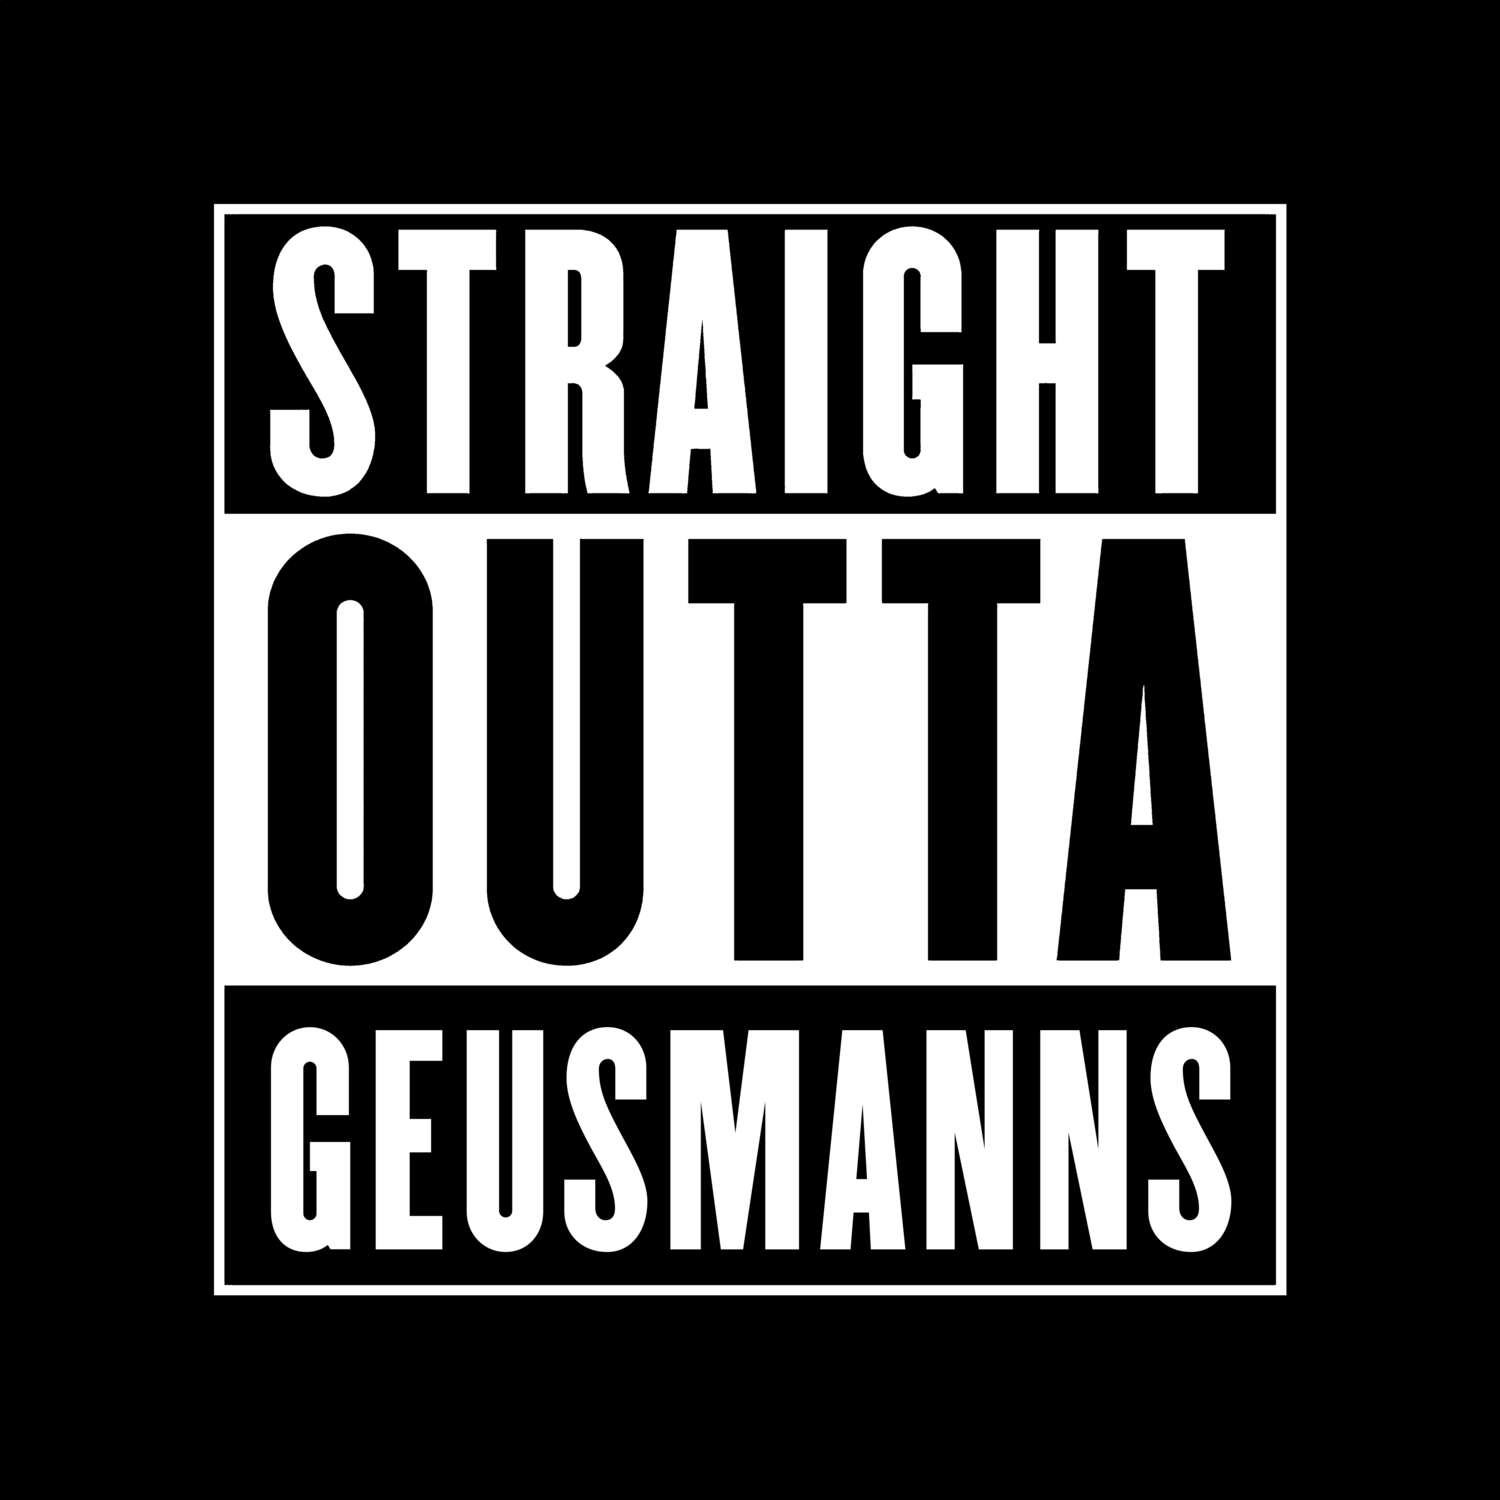 Geusmanns T-Shirt »Straight Outta«